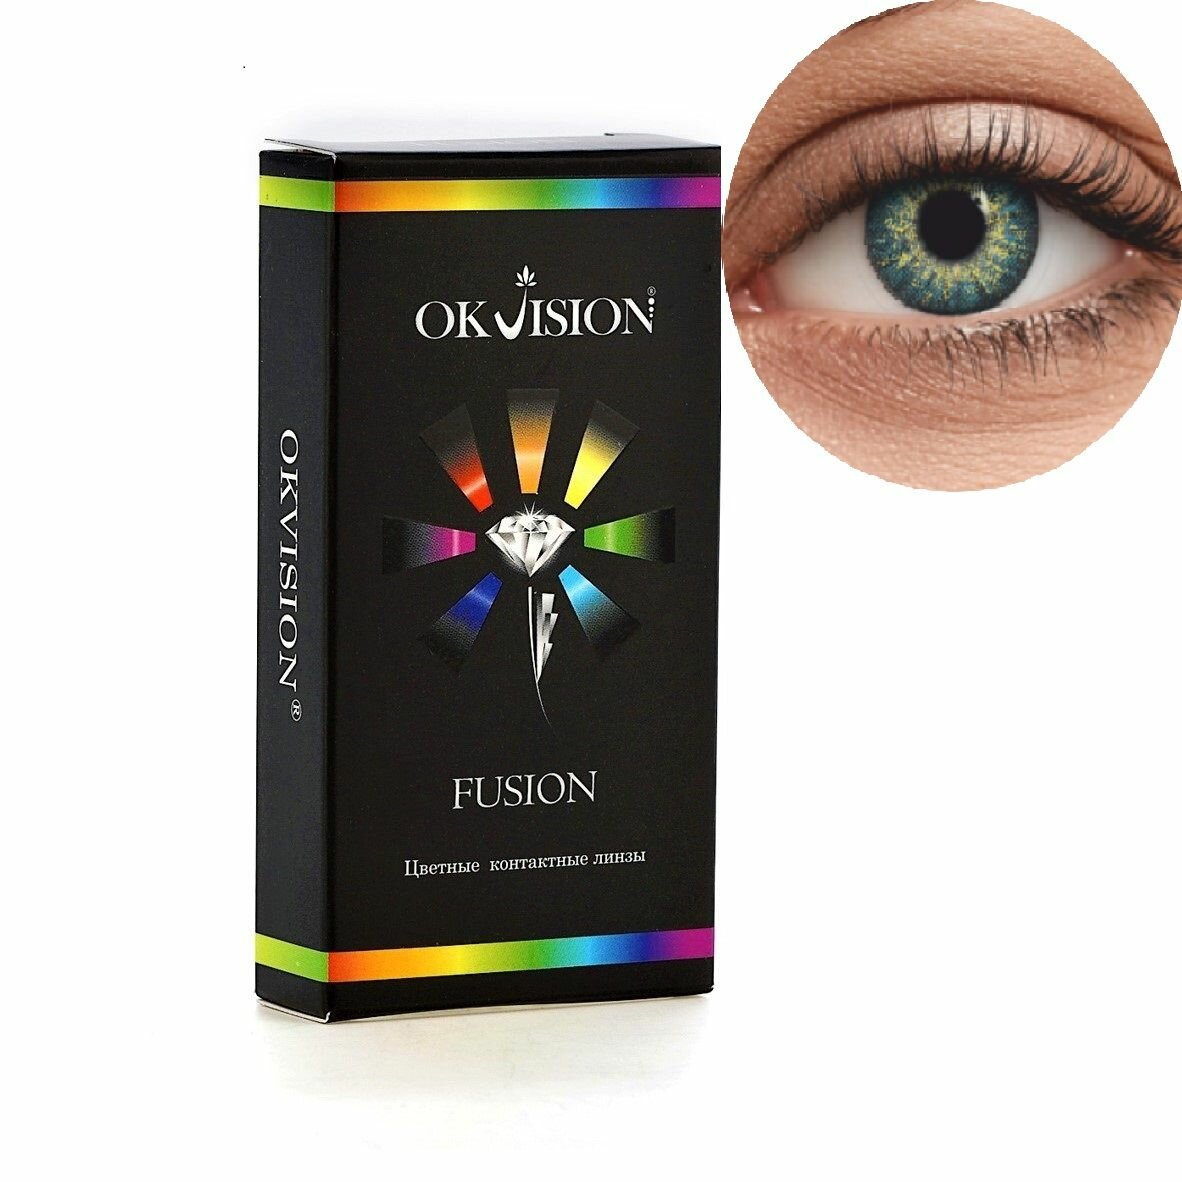 Цветные контактные линзы OKVision Fusion Azure, -2.50